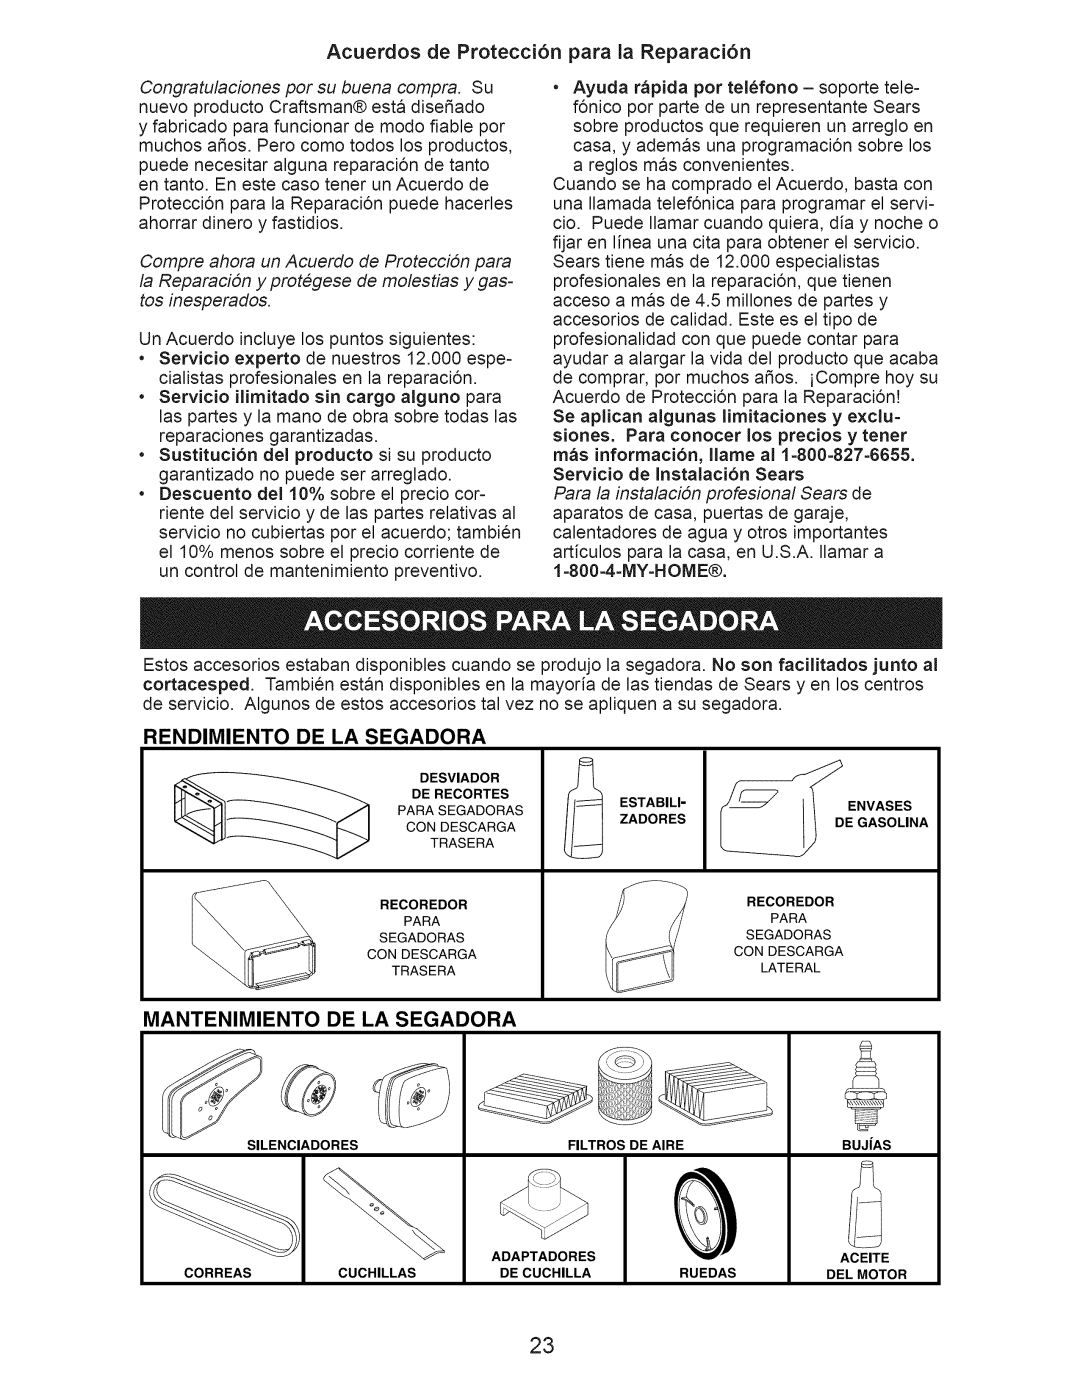 Craftsman 917.376407 owner manual Acuerdos de Protecci6n para la Reparaci6n, Rendimiento, De La Segadora, Mantenimiento 